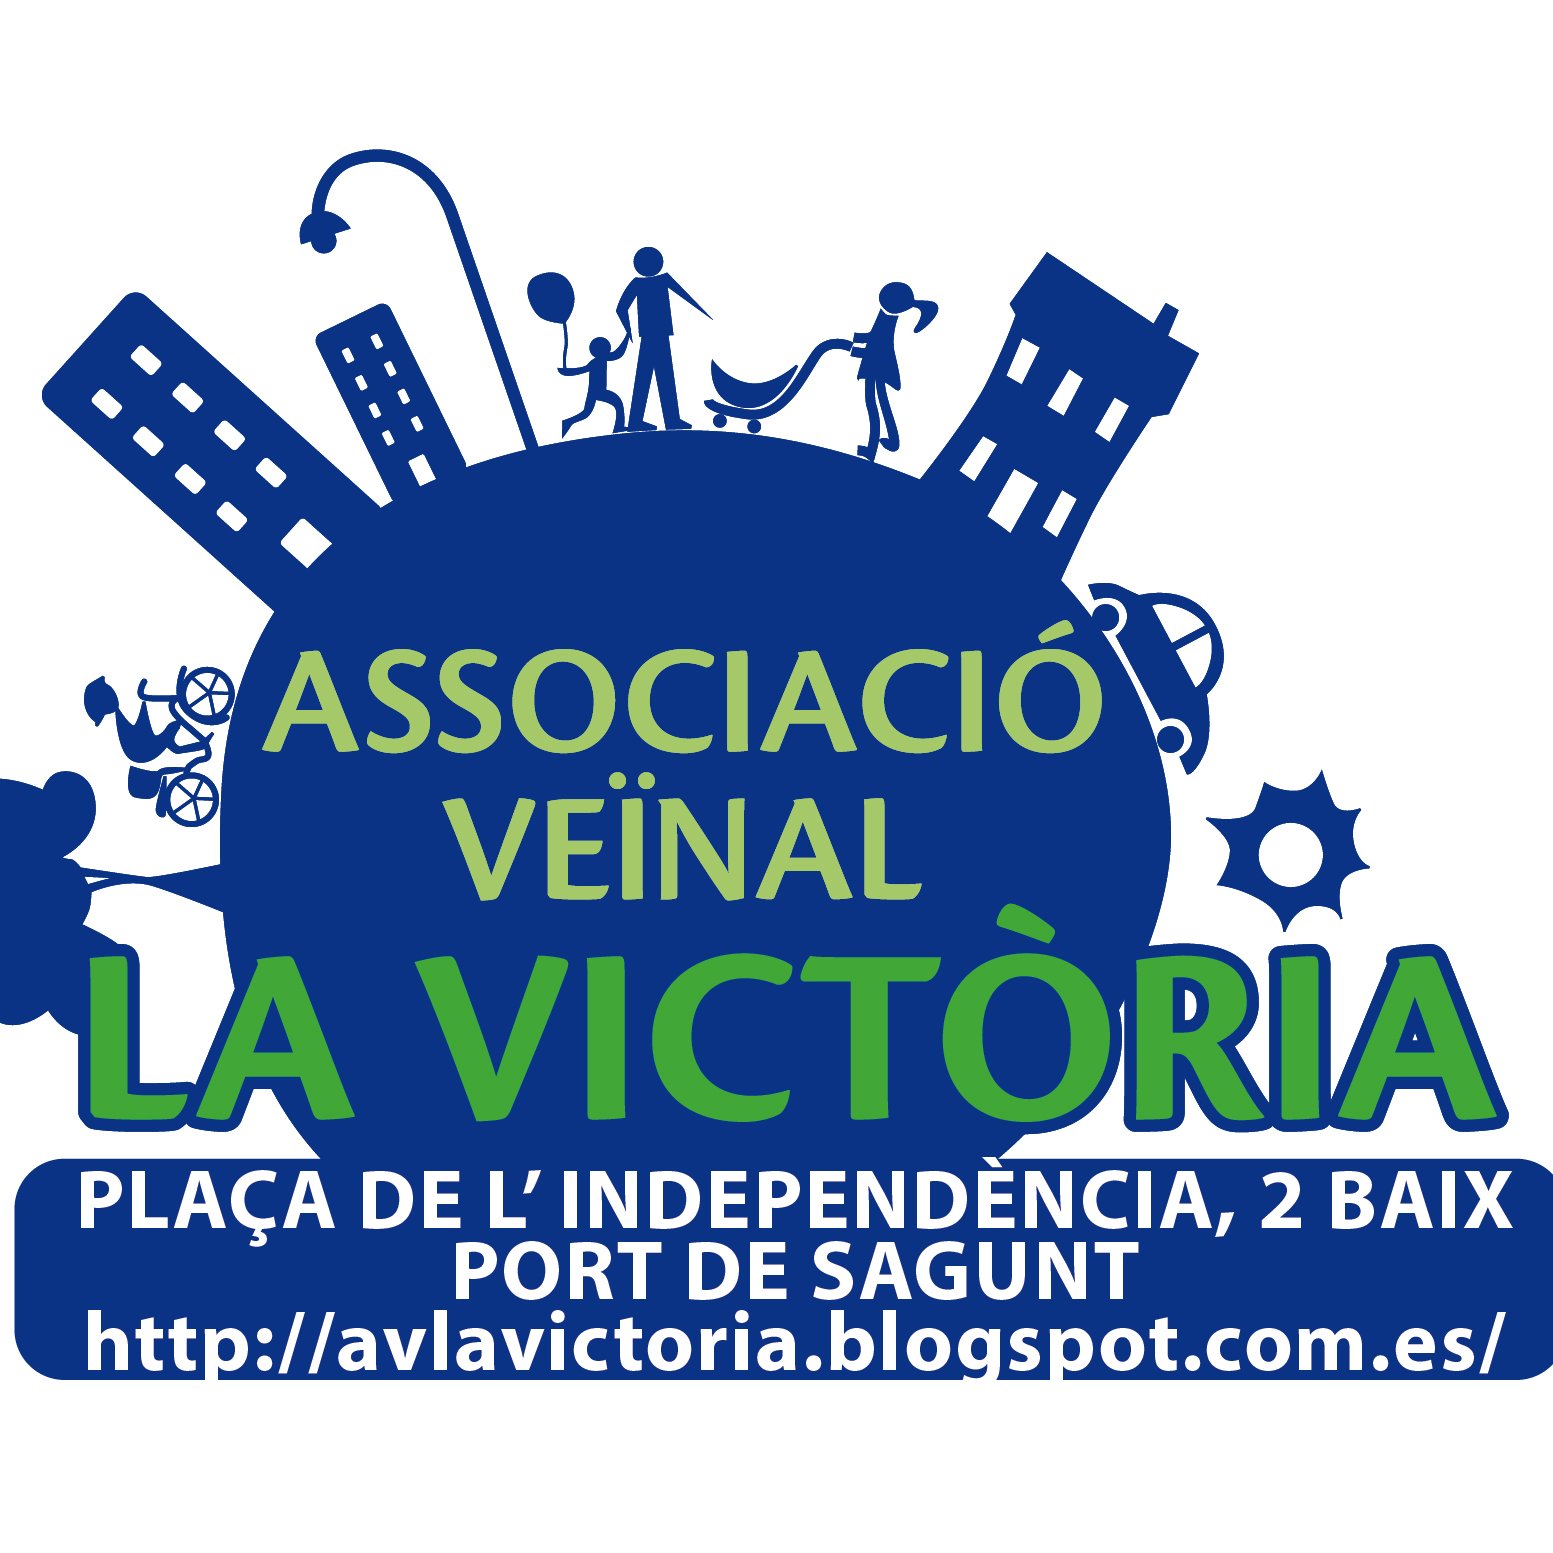 Vente a la Associació Veïnal “La Victòria” y mejora tu calidad de vida y la del vecindario con tu participación.